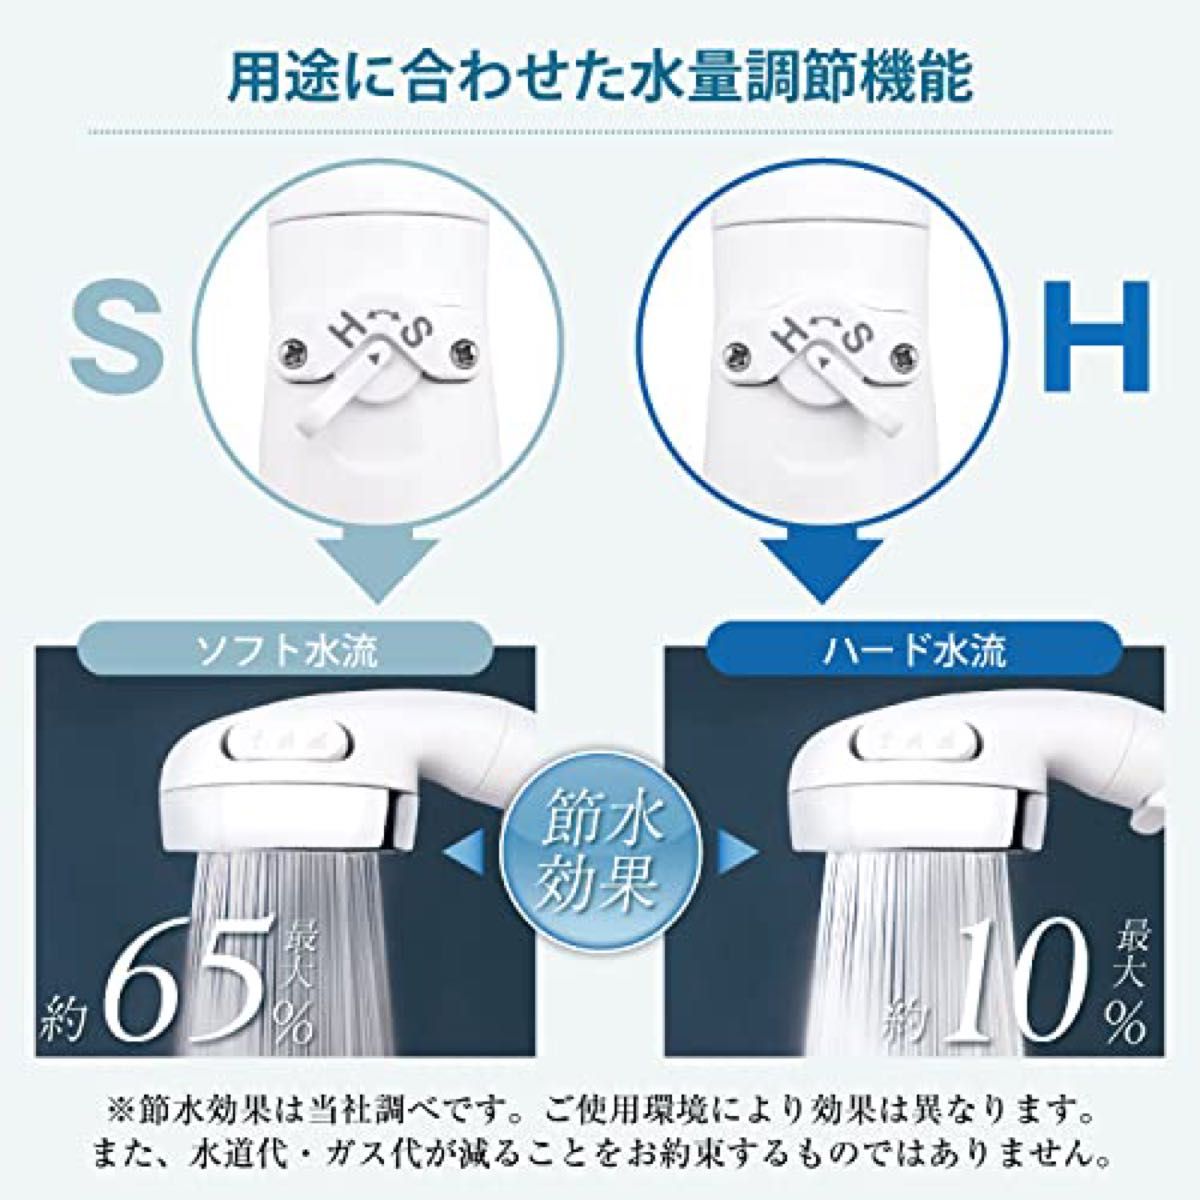 シャワーヘッド 増圧 65%節水 水量調整機能 手元ストップ 止水